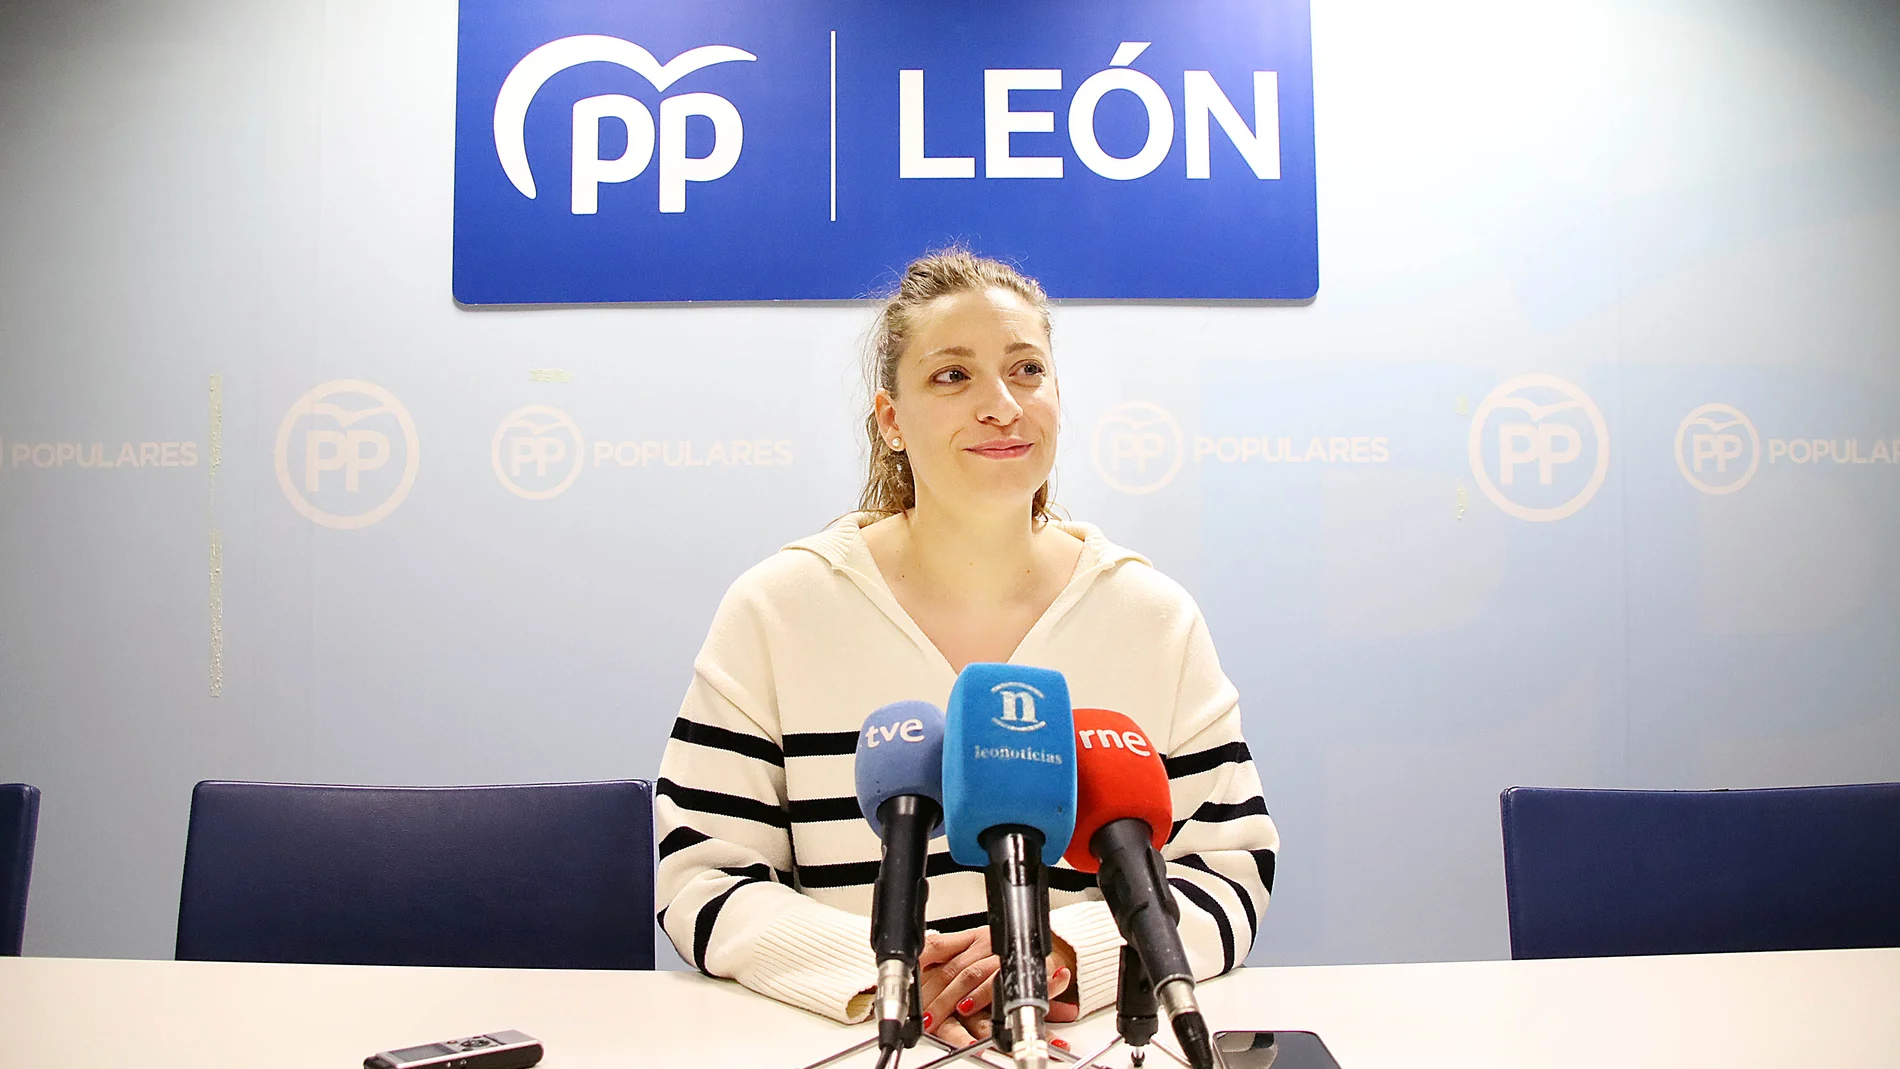 La presidenta del PP de León, Ester Muñoz, comparece ante los medios